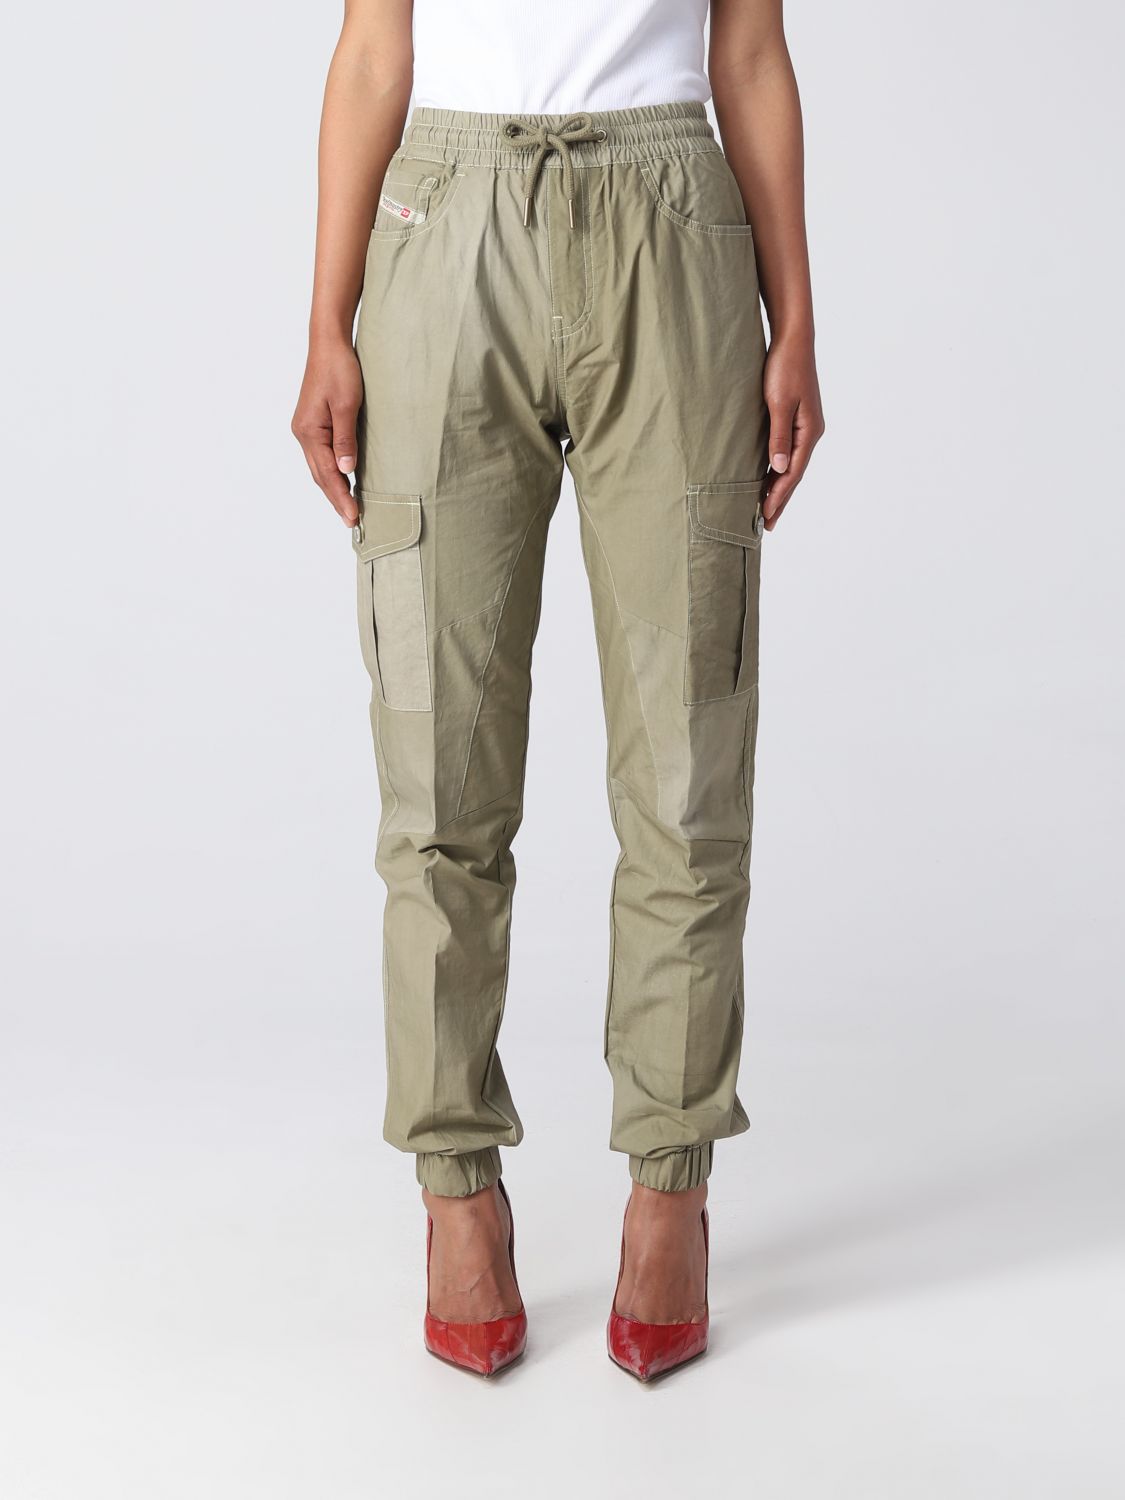 DIESEL: pants for woman - Green | Diesel pants A087930KGAW online on ...